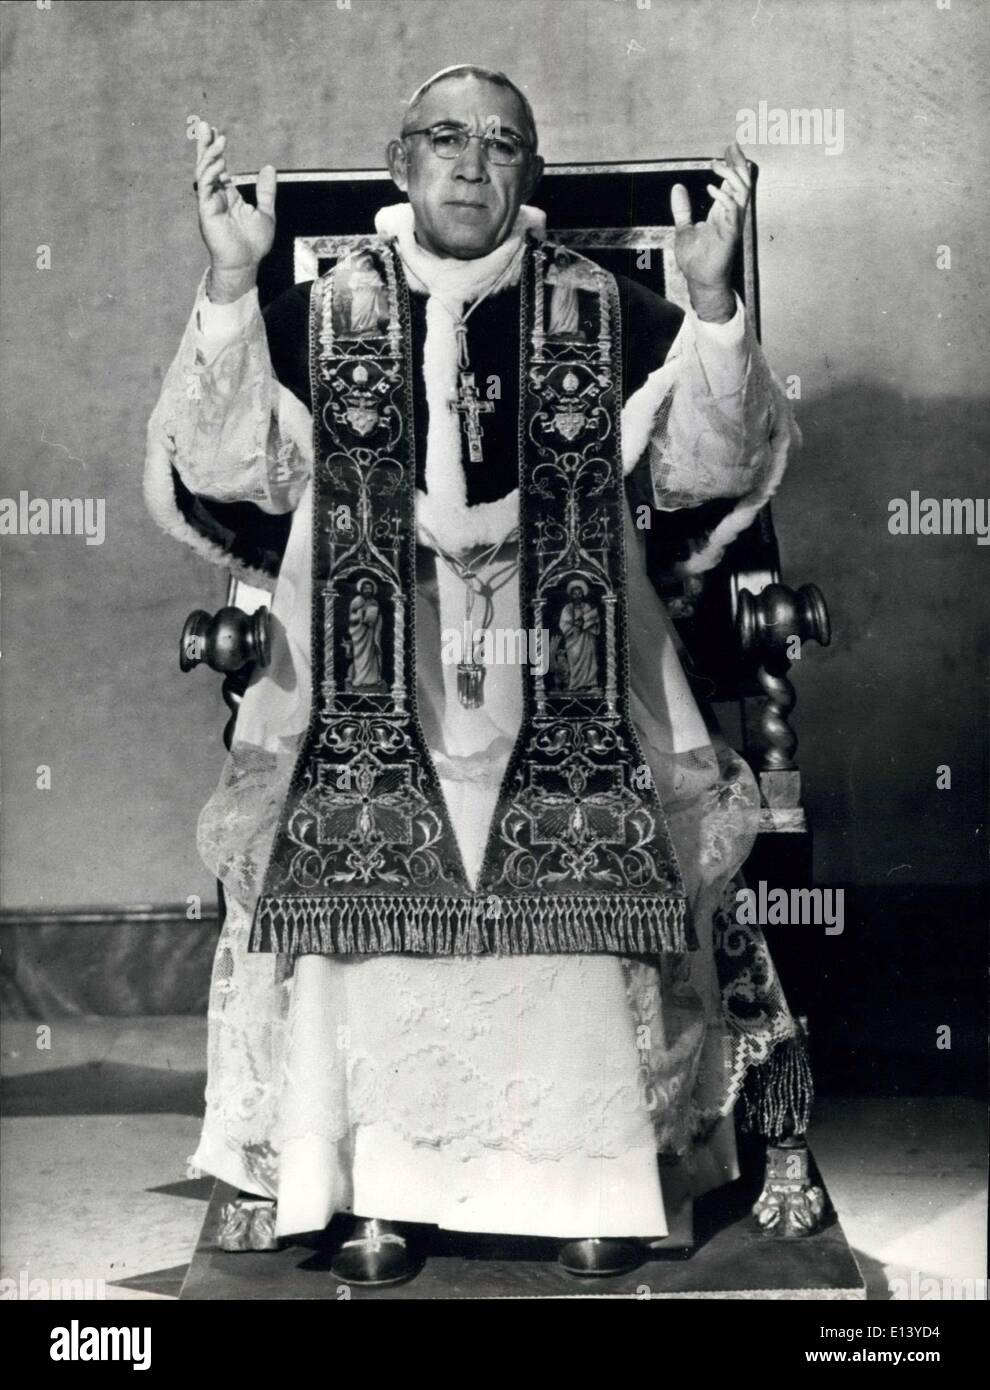 31 mars 2012 - l'homme en robe d'un blanc pur. Il siège sedately portant la robe blanche d'un Pape. L'homme de la photo ressemble chaque pouce un chef de l'Église de Rome. Mais le visage est sans équivoque, l'acteur Anthony Quinn est habillée pour son rôle dans le film , l'histoire d'un archevêque russe qui devient pape. Le film est basé sur Morris West's best-seller. Banque D'Images